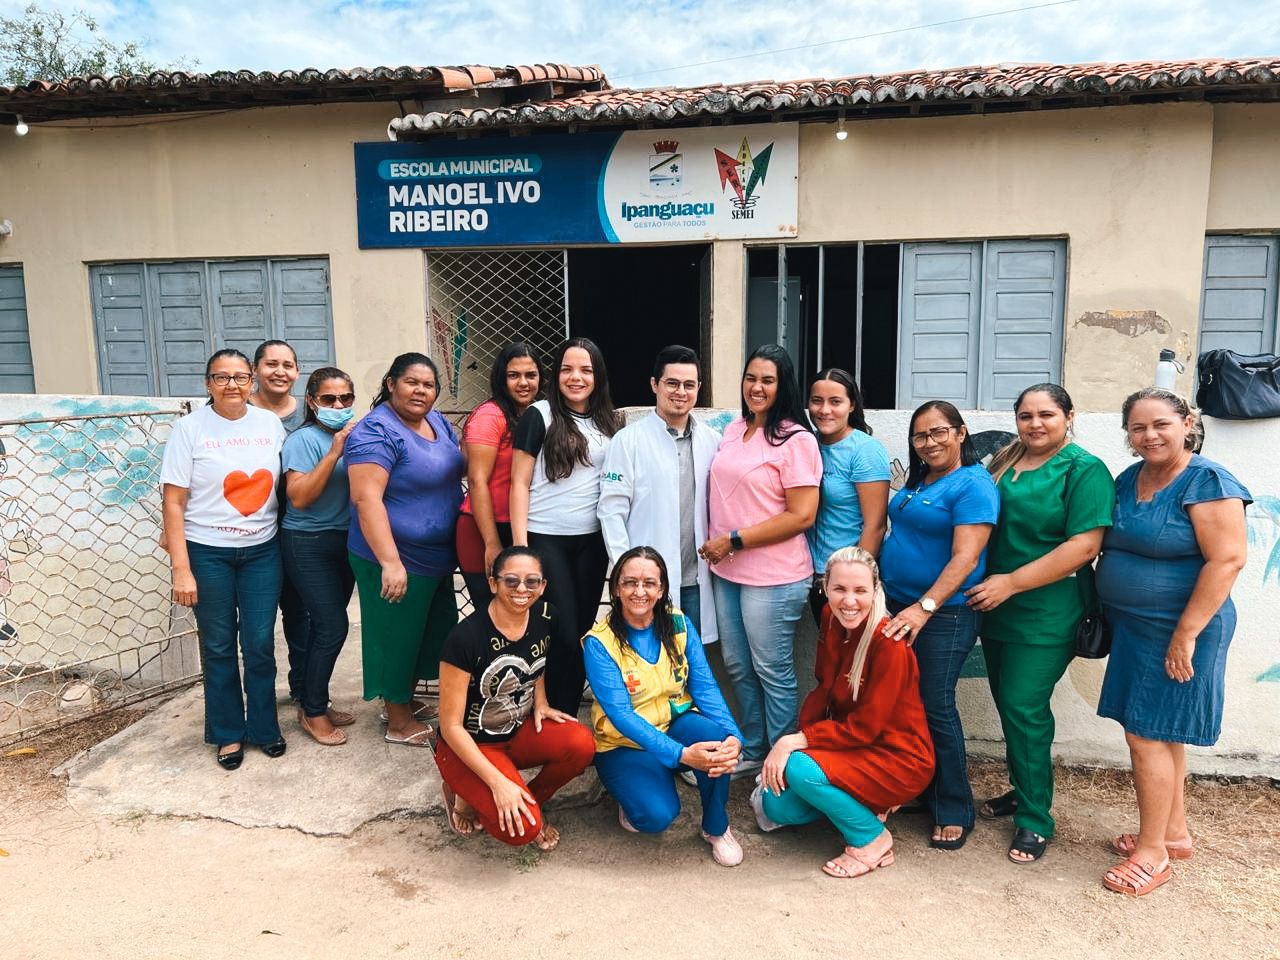 Saúde Bucal: ESF de Japiaçu realiza ação na Escola Manoel Ivo Ribeiro